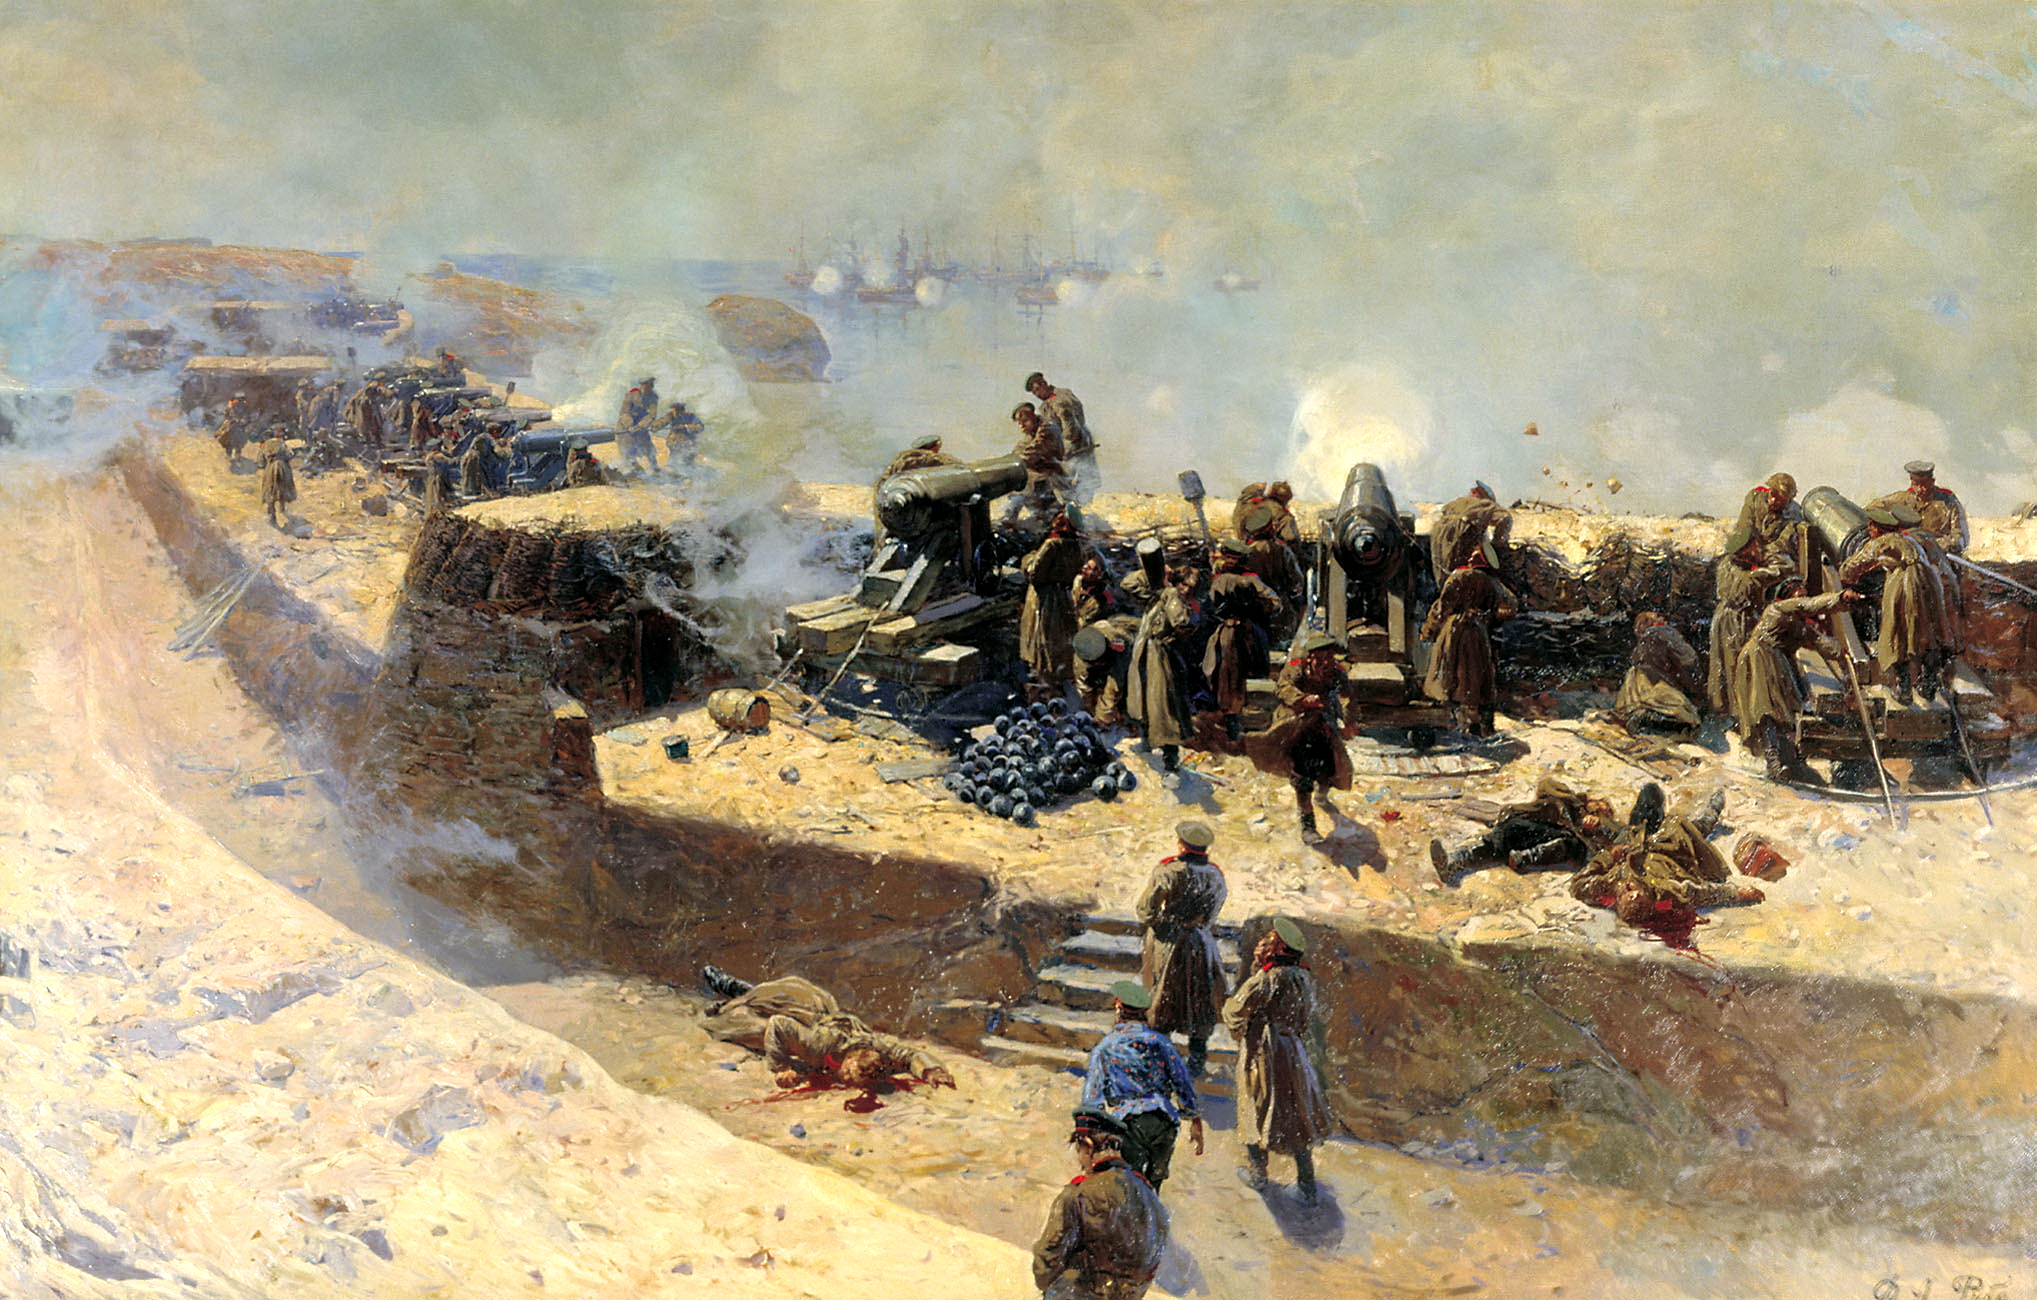 Оборона Севастополя 1854-1855